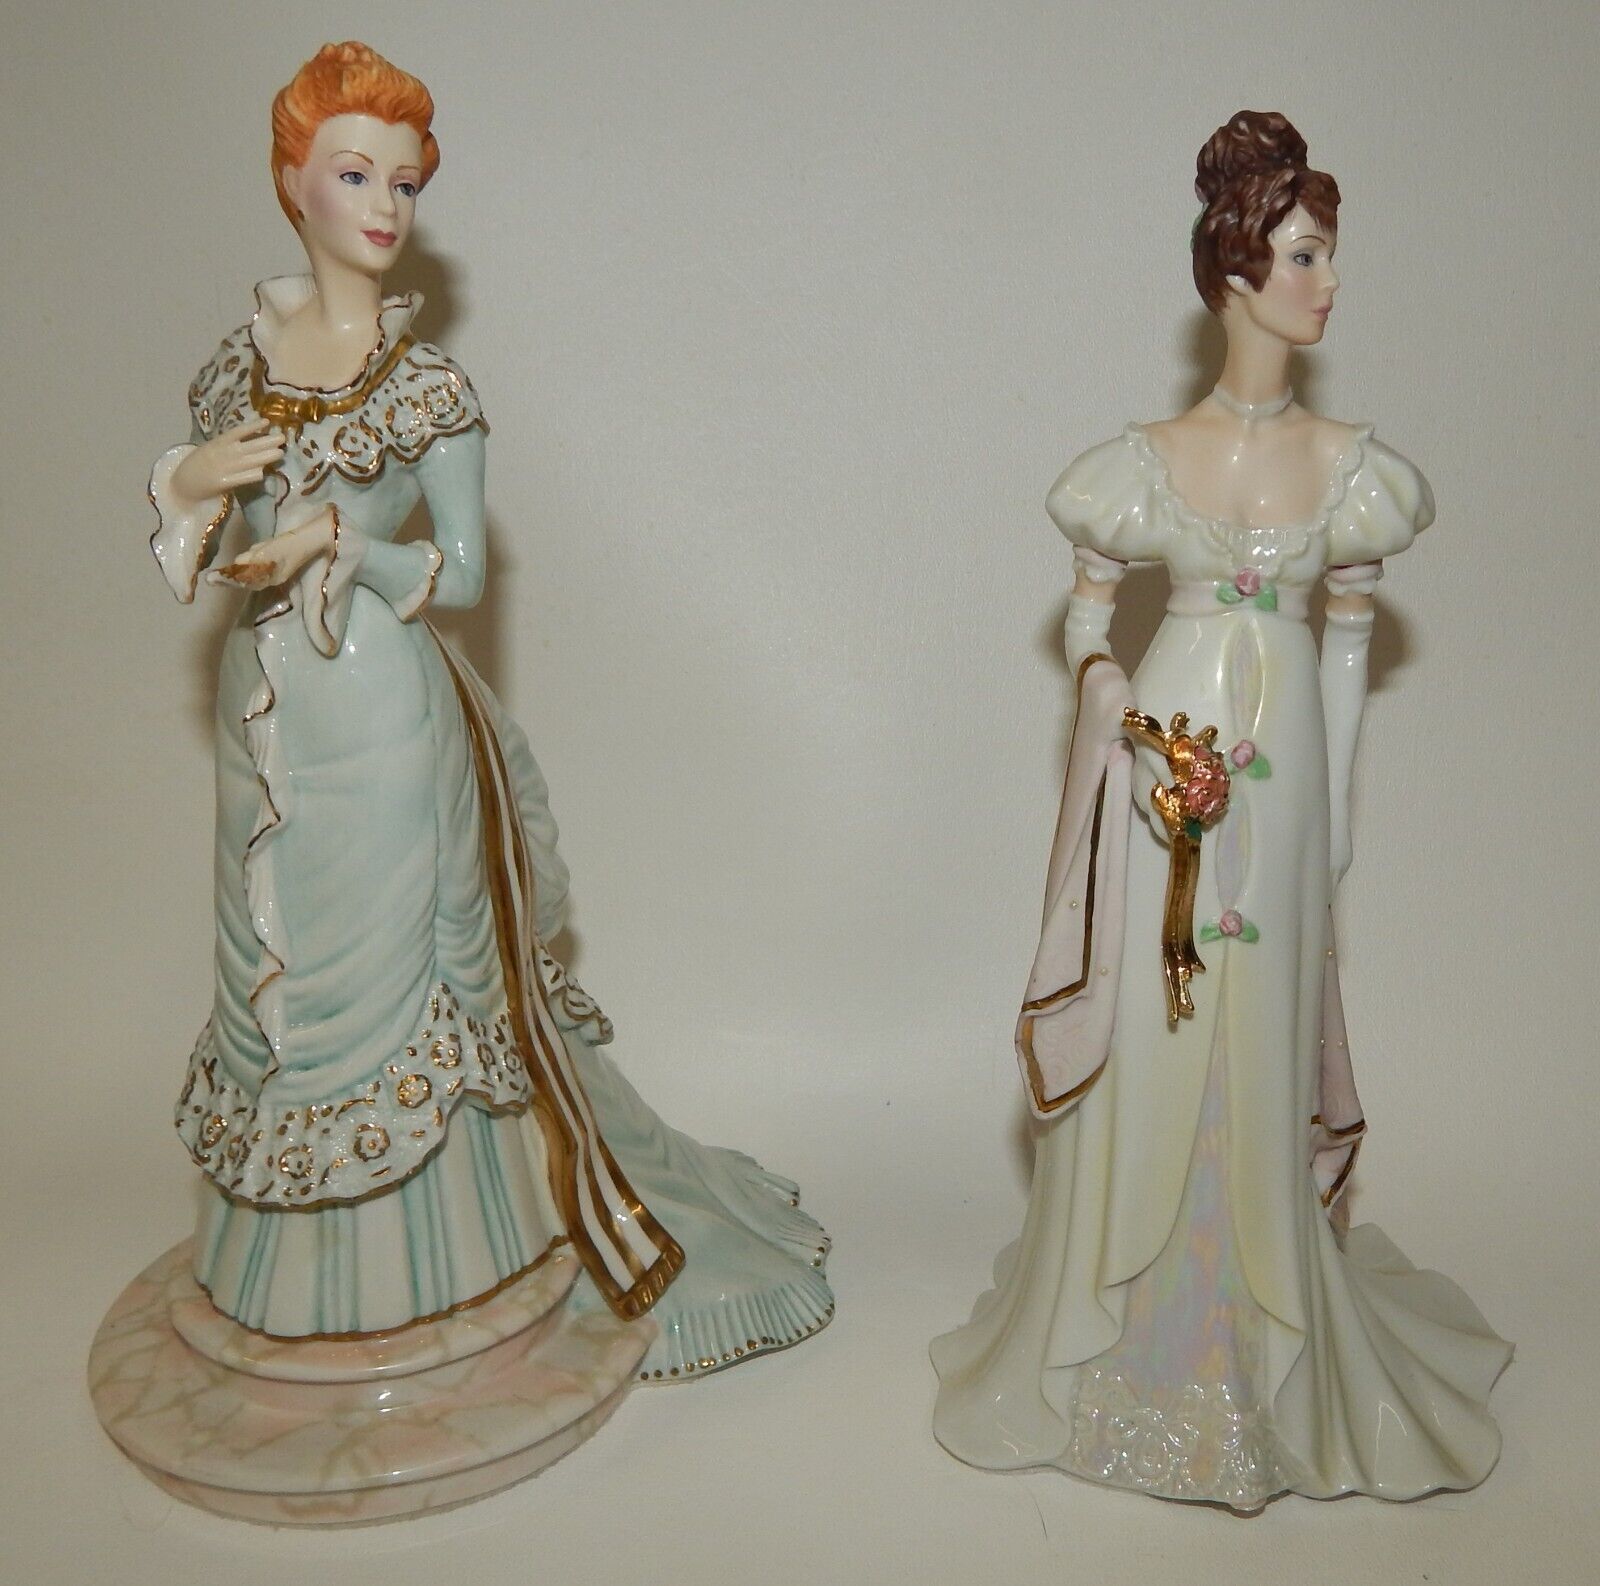 2 Franklin Mint Figurines - Madame Olenska & Arabella 